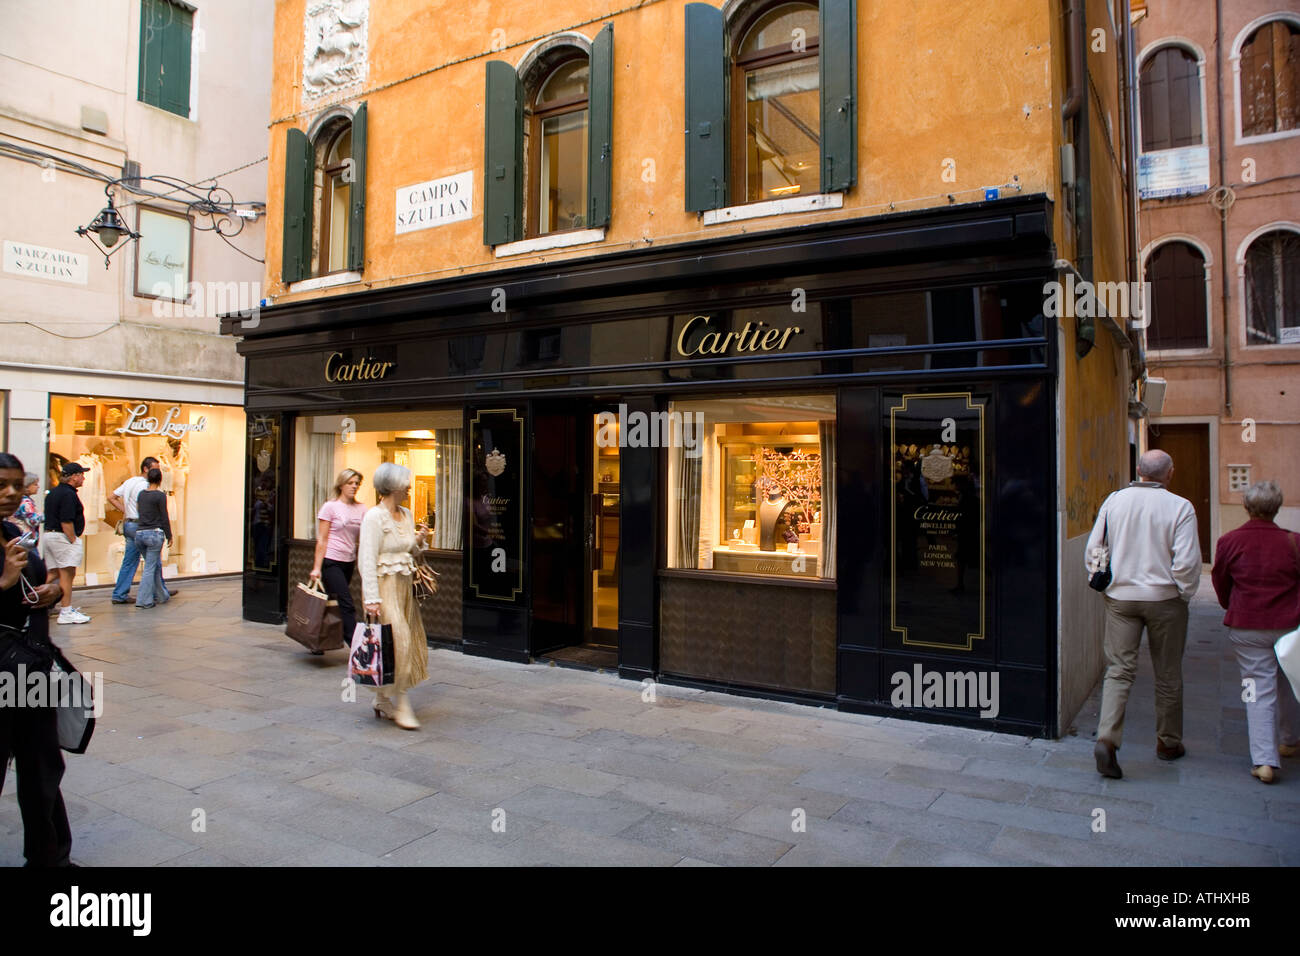 cartier boutique venezia